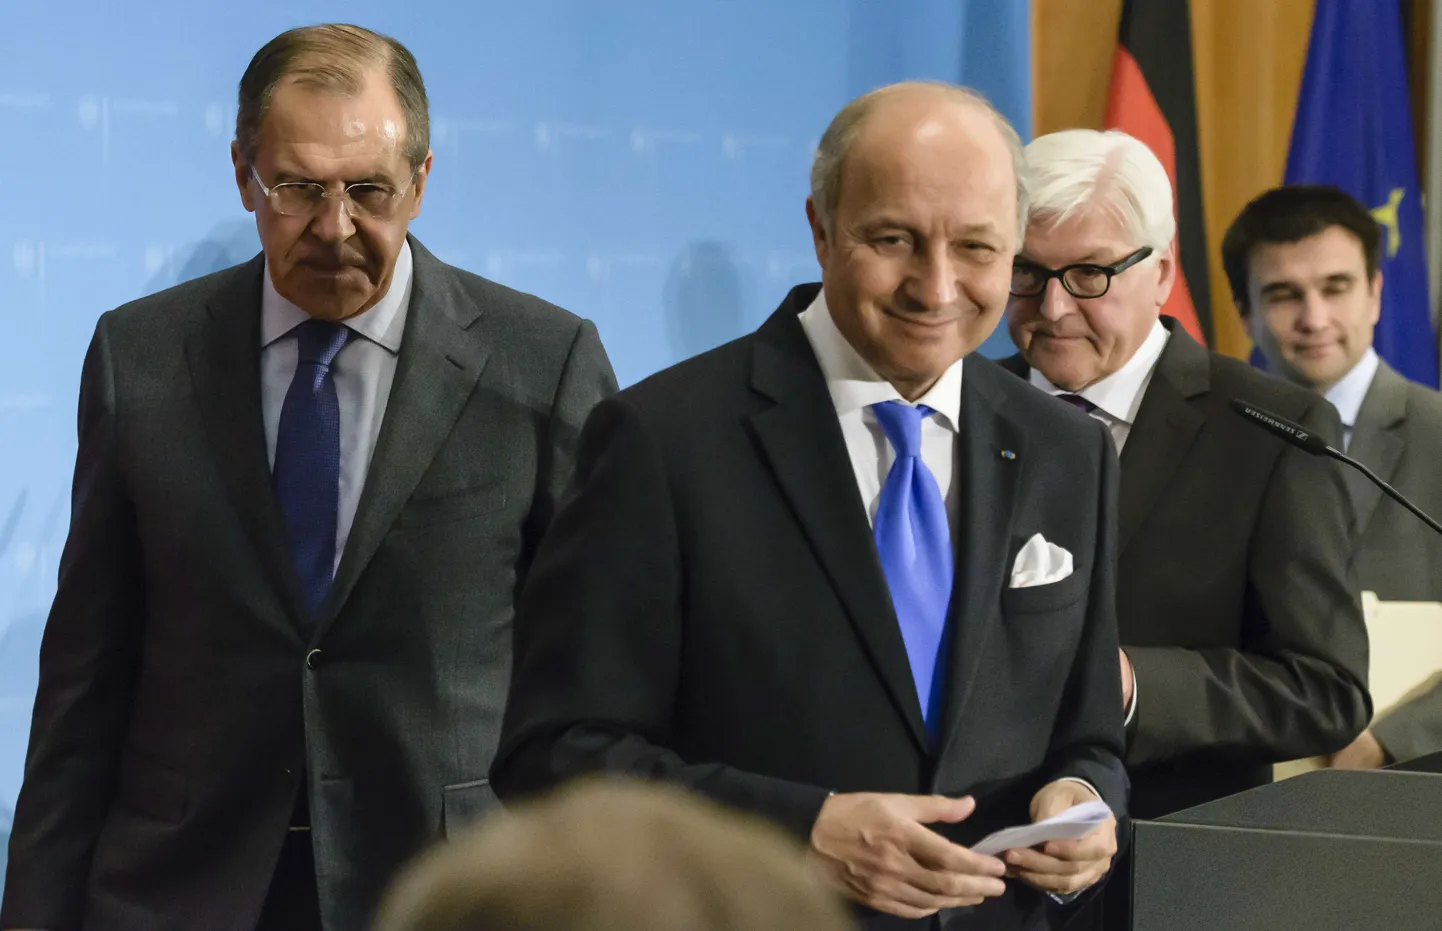 (Vasakult paremale) Vene välisminister Sergei Lavrov, Prantsuse välisminister Laurent Fabius, Saksa välisminister Frank-Walter Steinmeier ja Ukraina välisminister Pavlo Klimkin pärast ühist pressikonverentsi Berliinis.